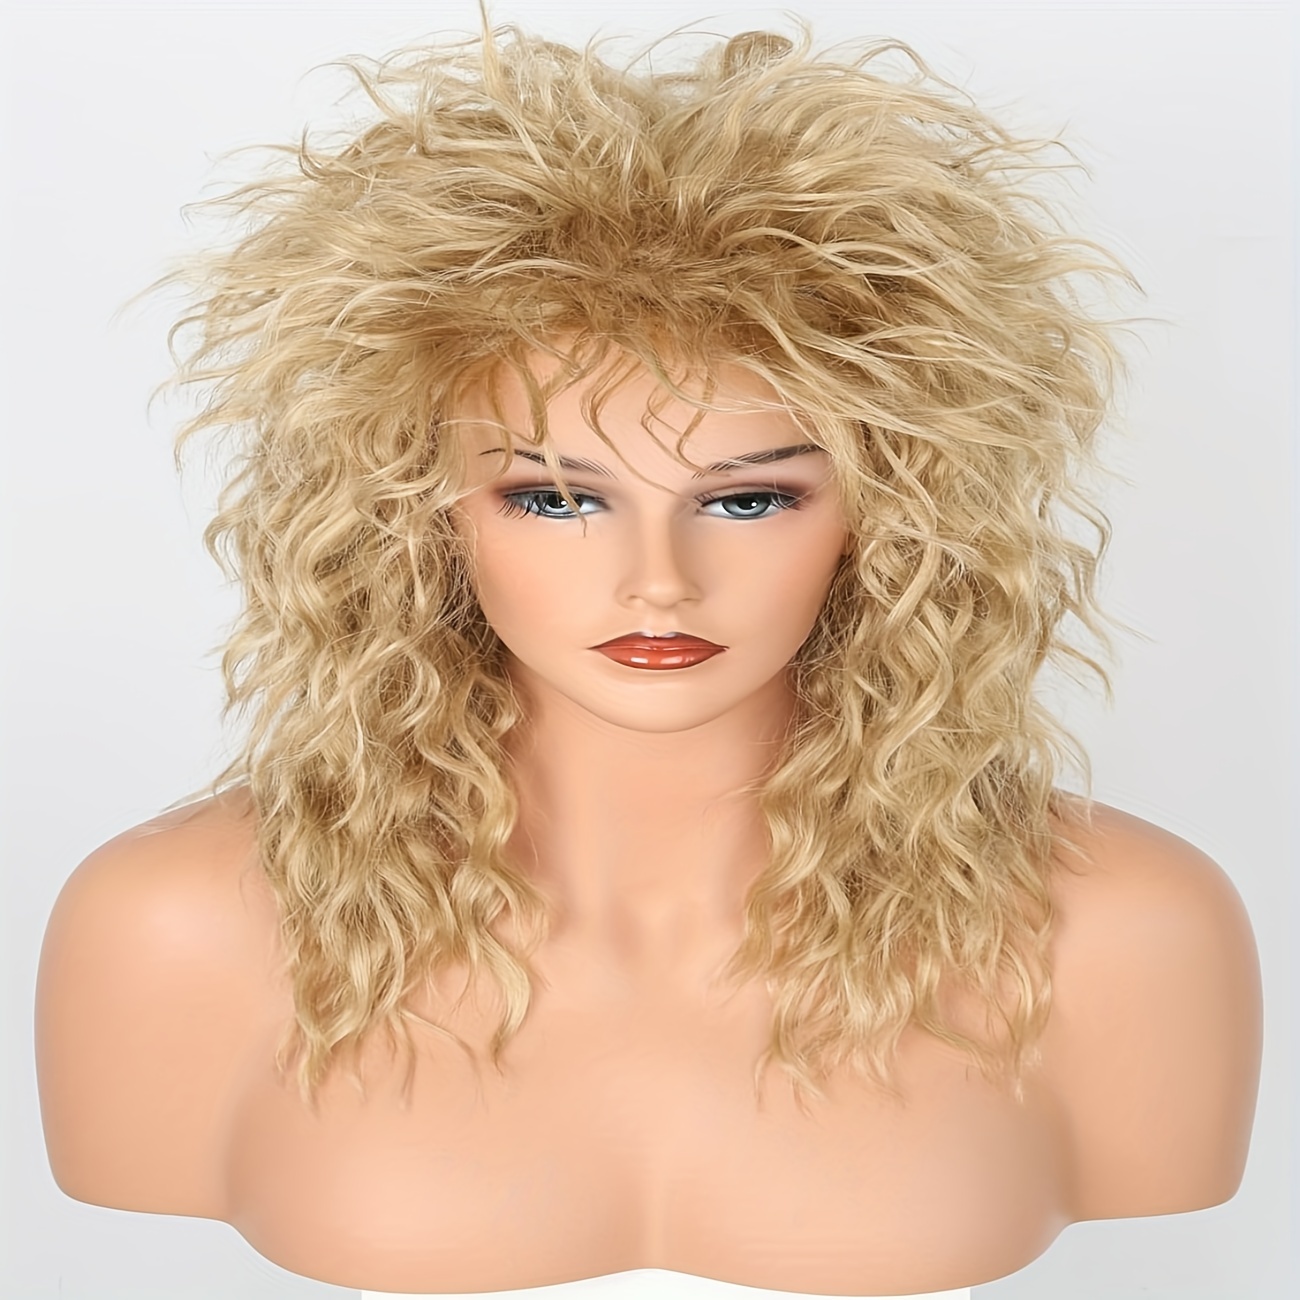 70s 80s Mens Wigs Punk Rocker Wigs Long Curly Hair Ladies Fluffy Heavy  Metal Rocker Wigs